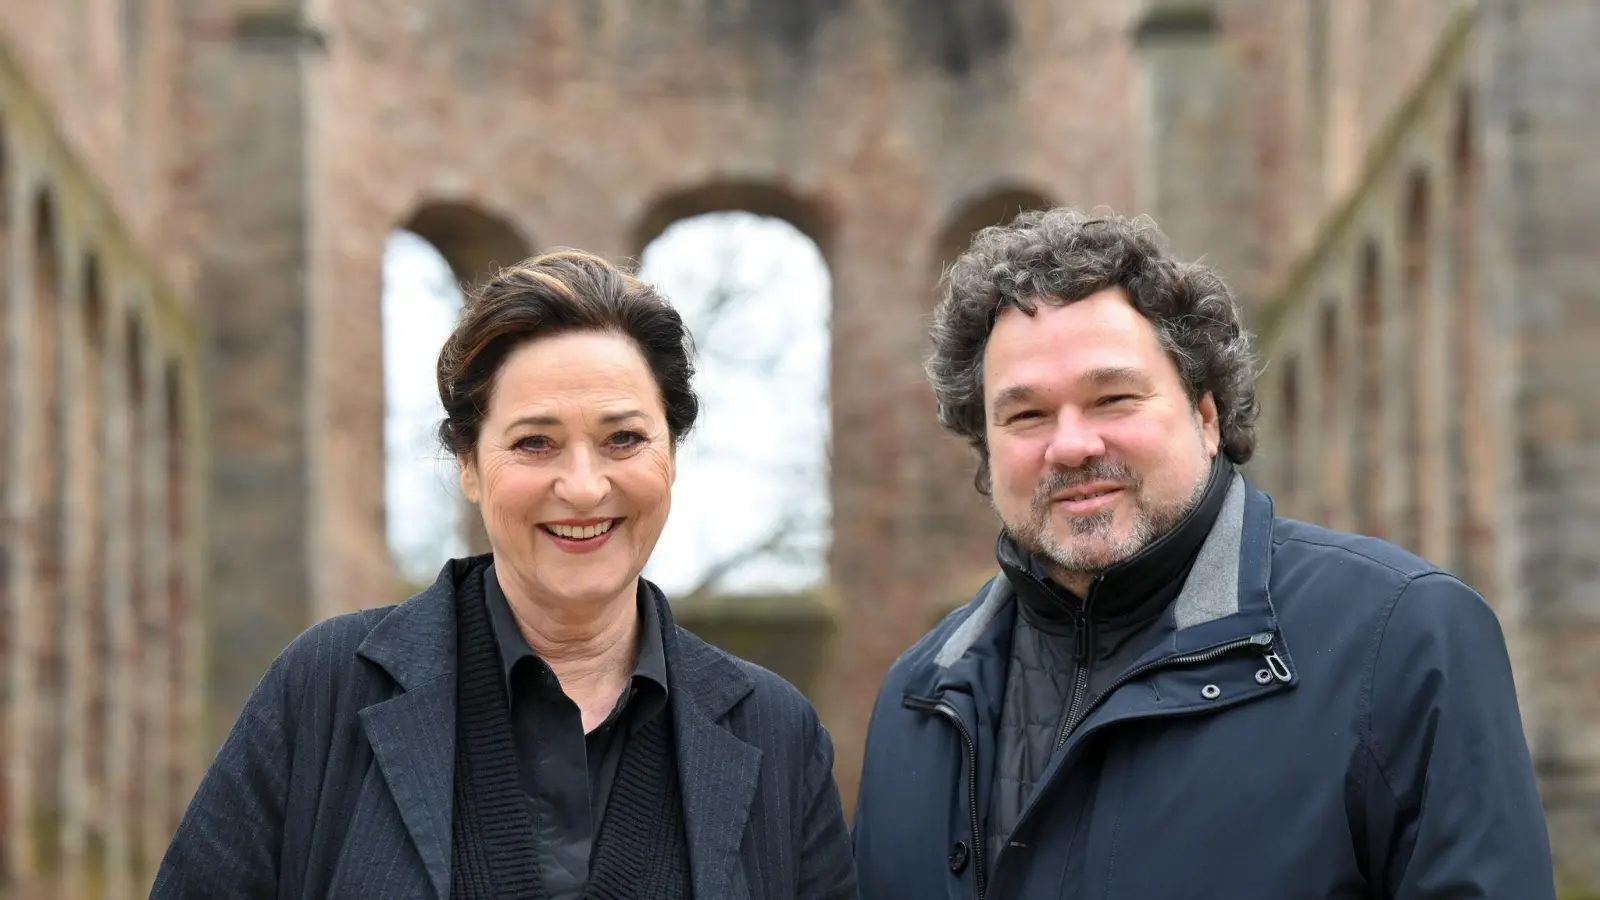 Schauspielerin Charlotte Schwab (l) mit Intendant Joern Hinkel in der Stiftsruine in Bad Hersfeld. (Foto: Uwe Zucchi/dpa)